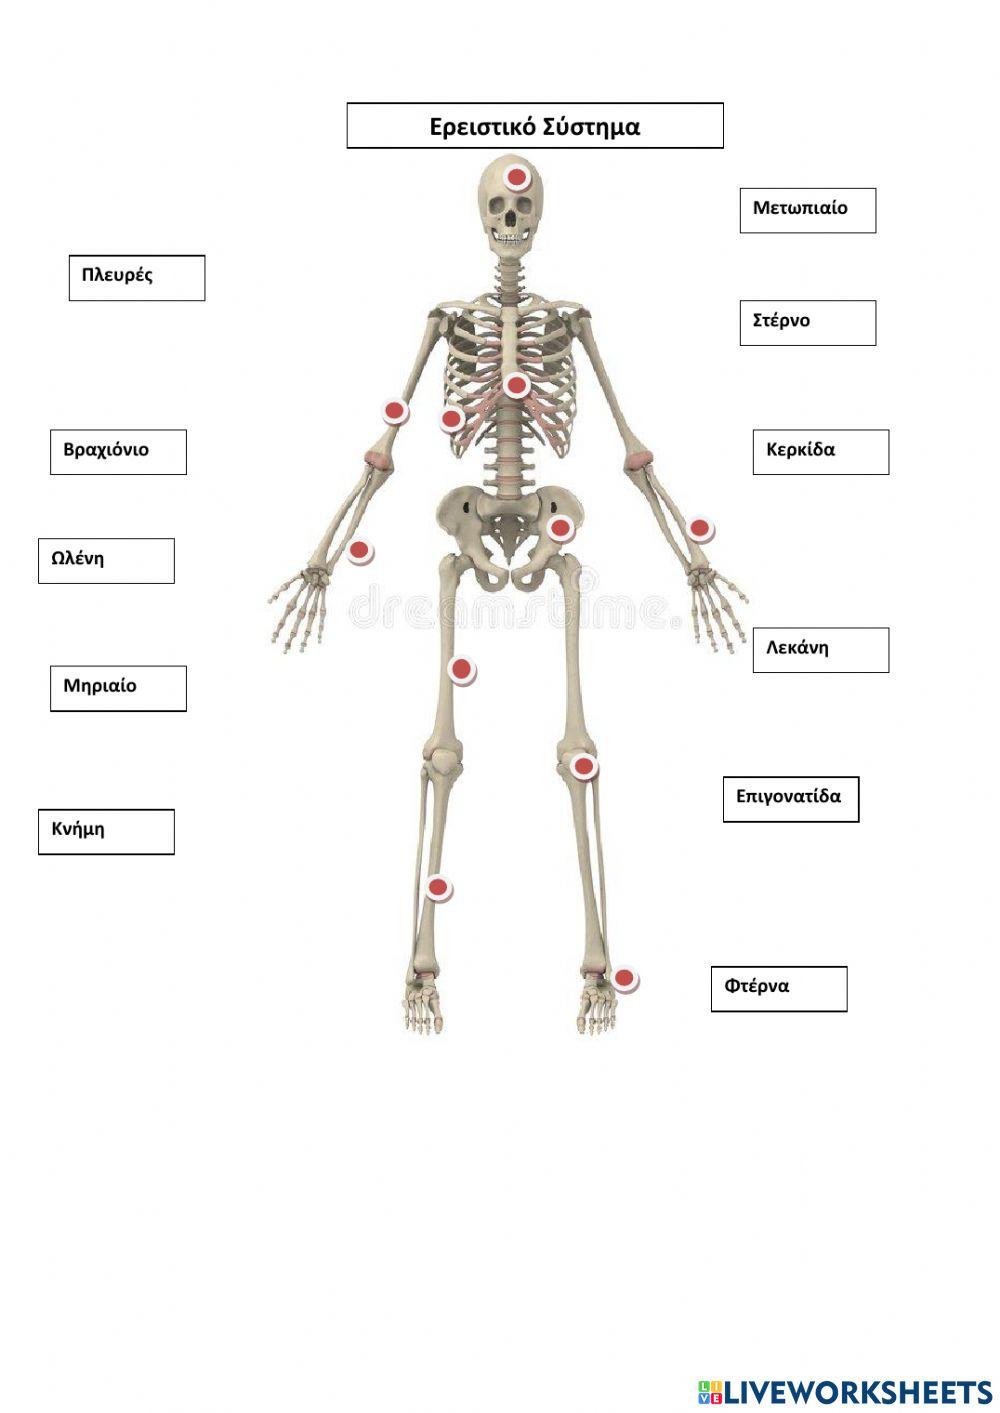 Ο σκελετός του Ανθώπου